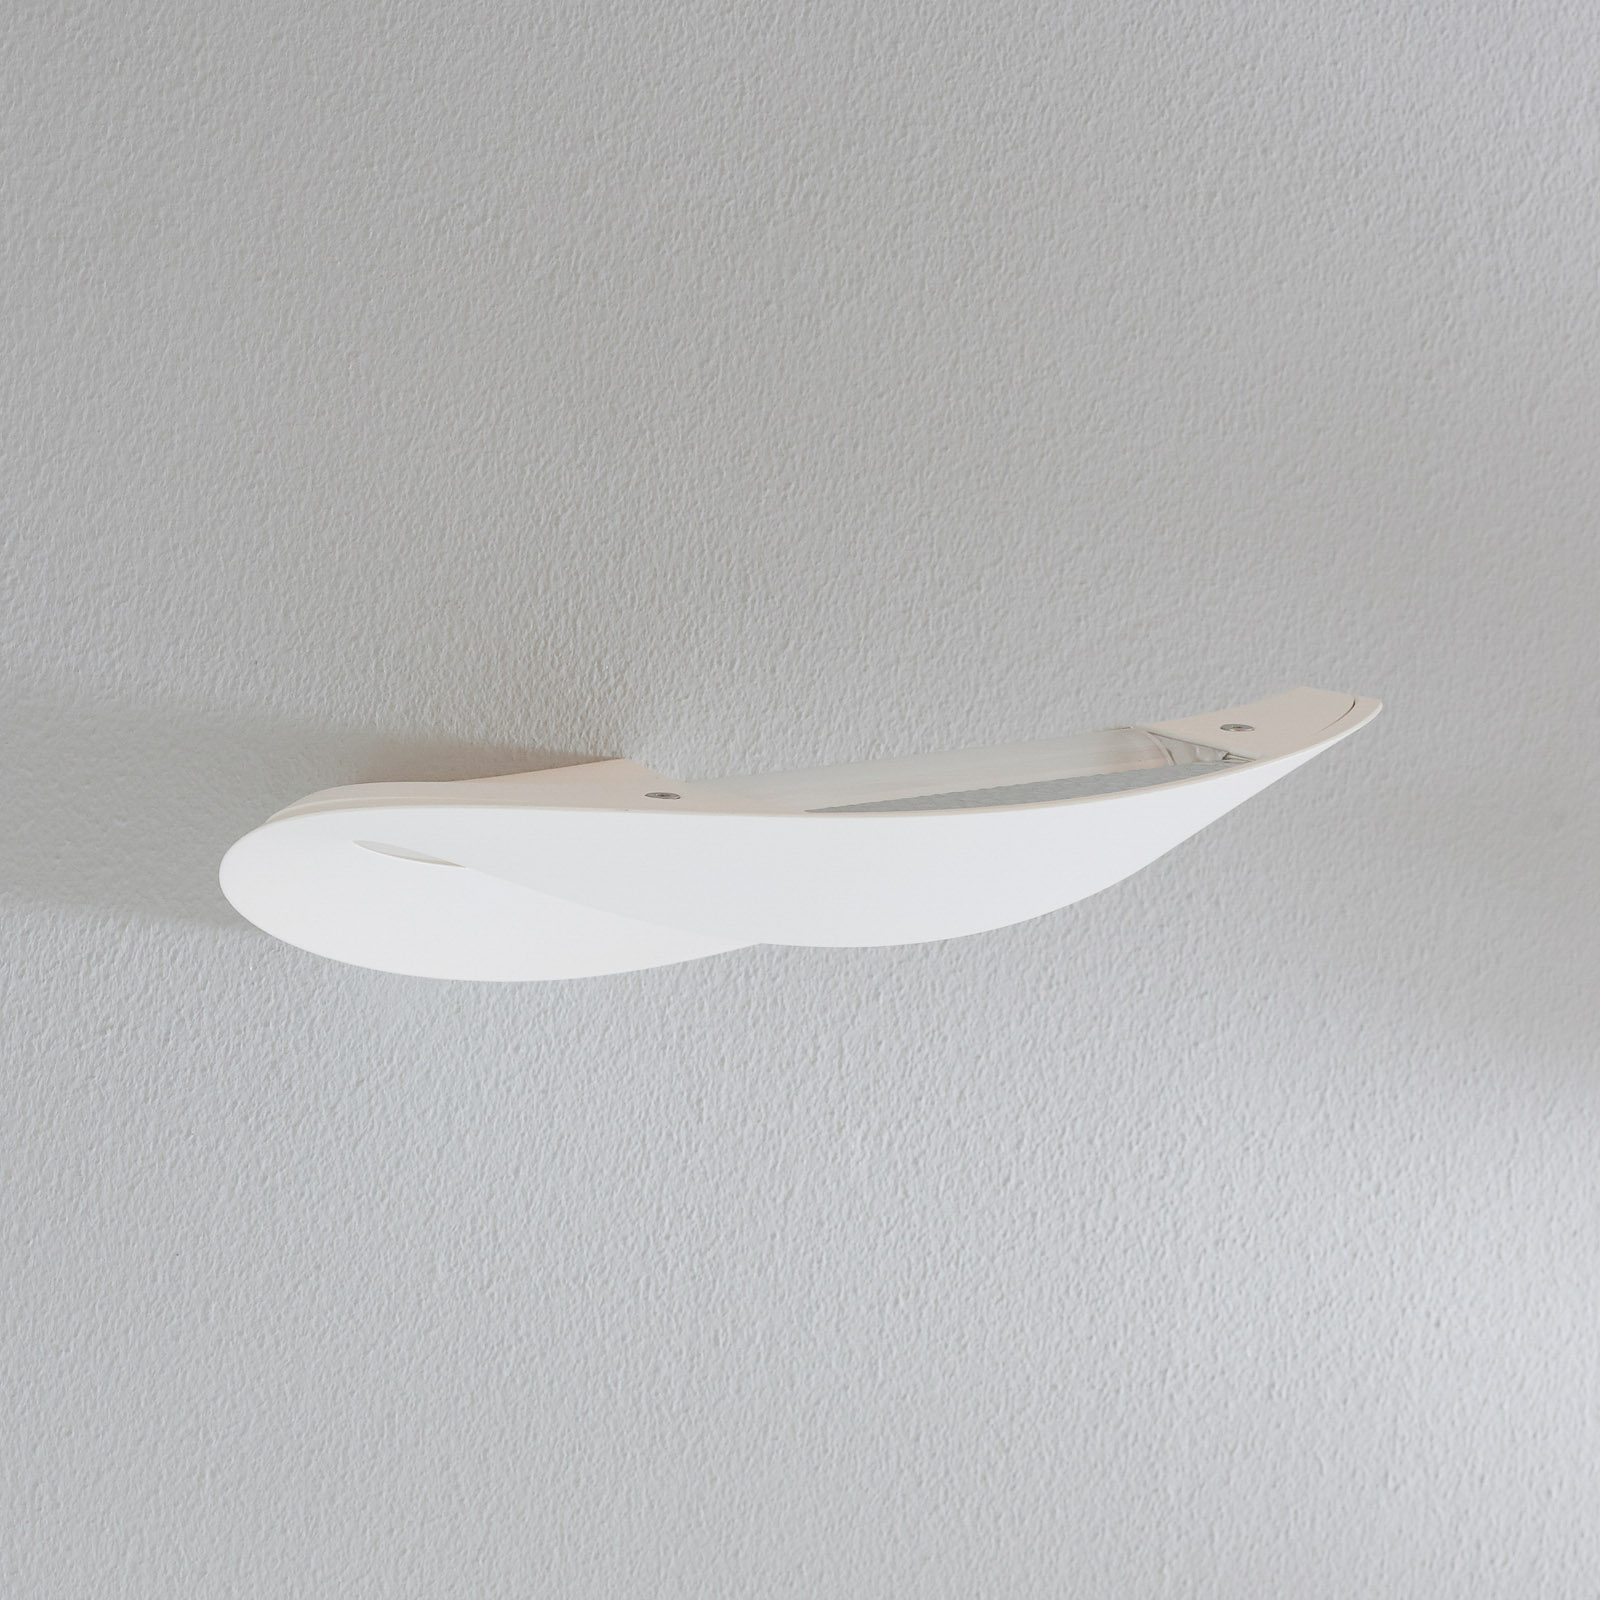 Mesmeri designer wall light, white